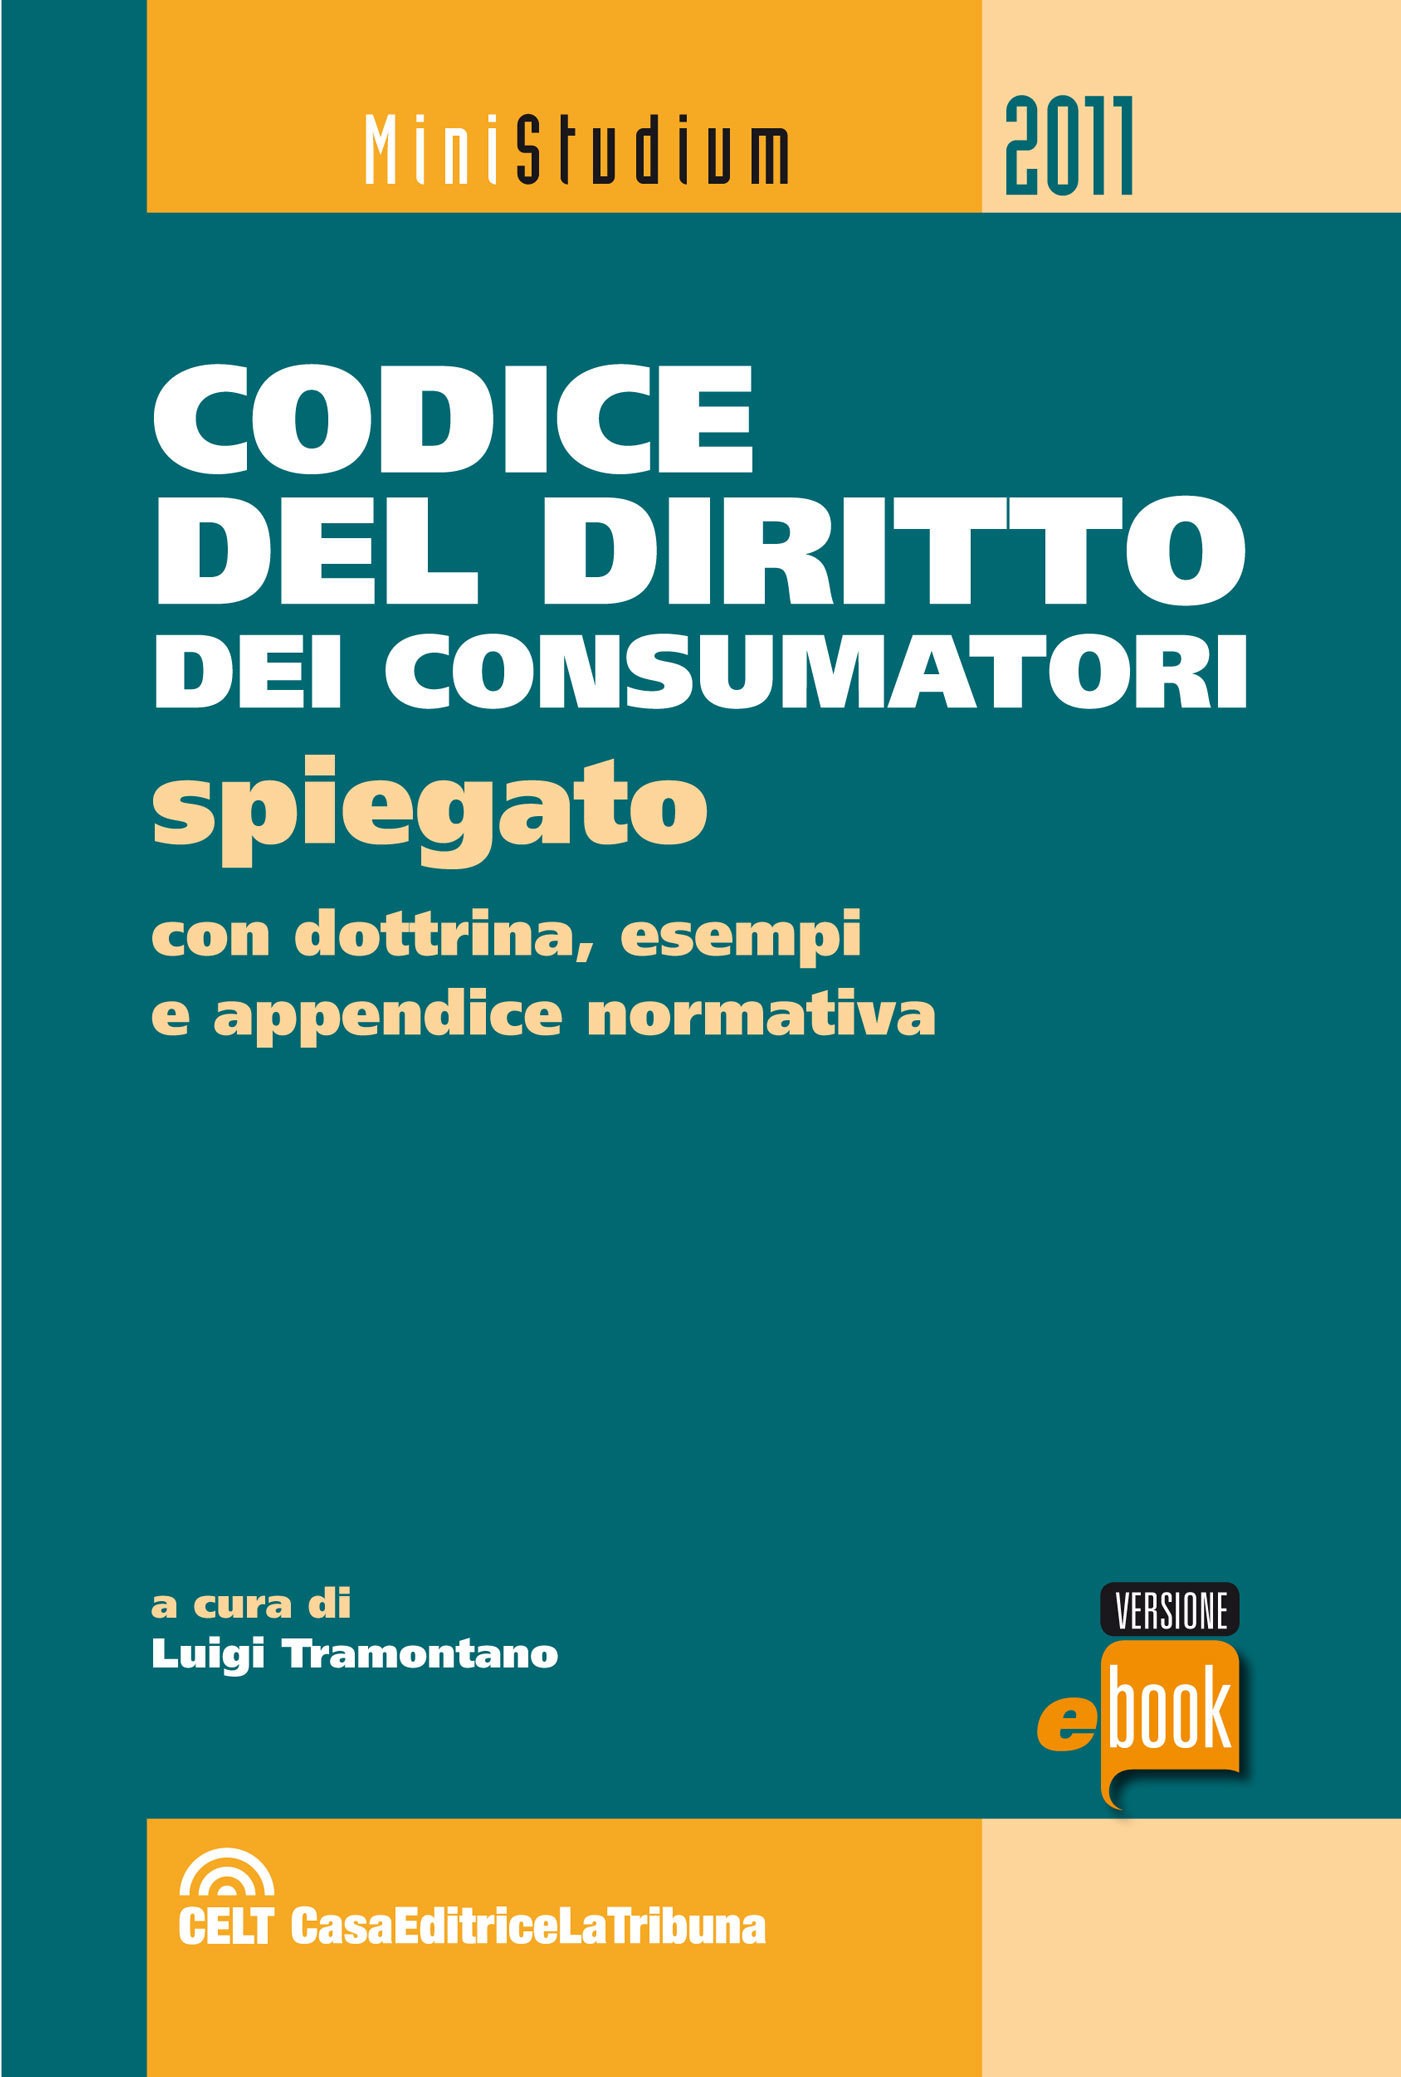 Codice del diritto dei consumatori spiegato - Librerie.coop